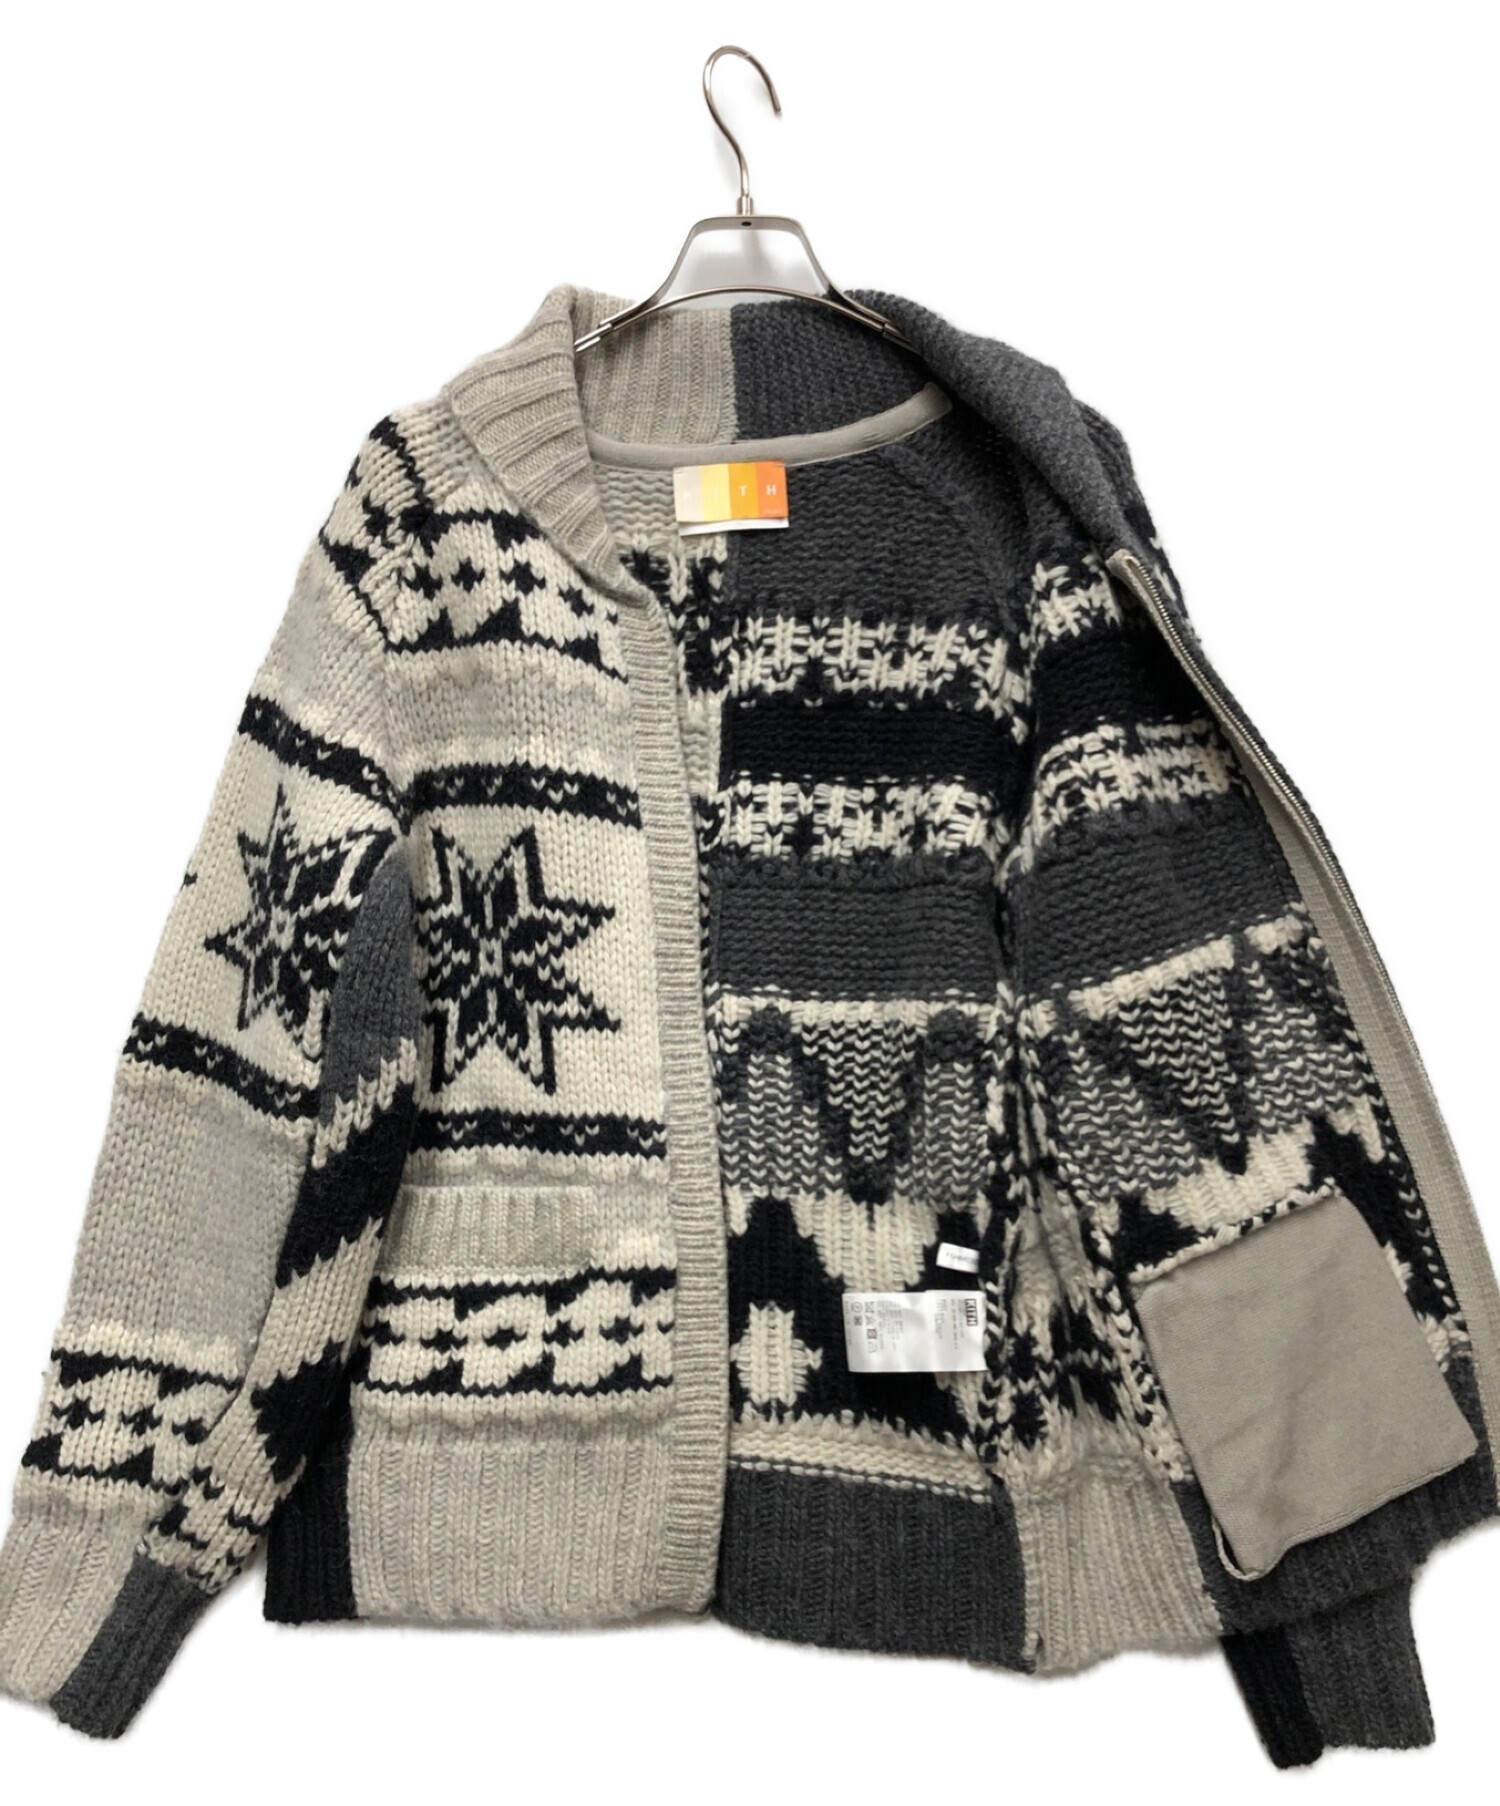 KITH (キス) Doubtless Peaks Full Zip Cardigan Sweater グレー サイズ:S 未使用品